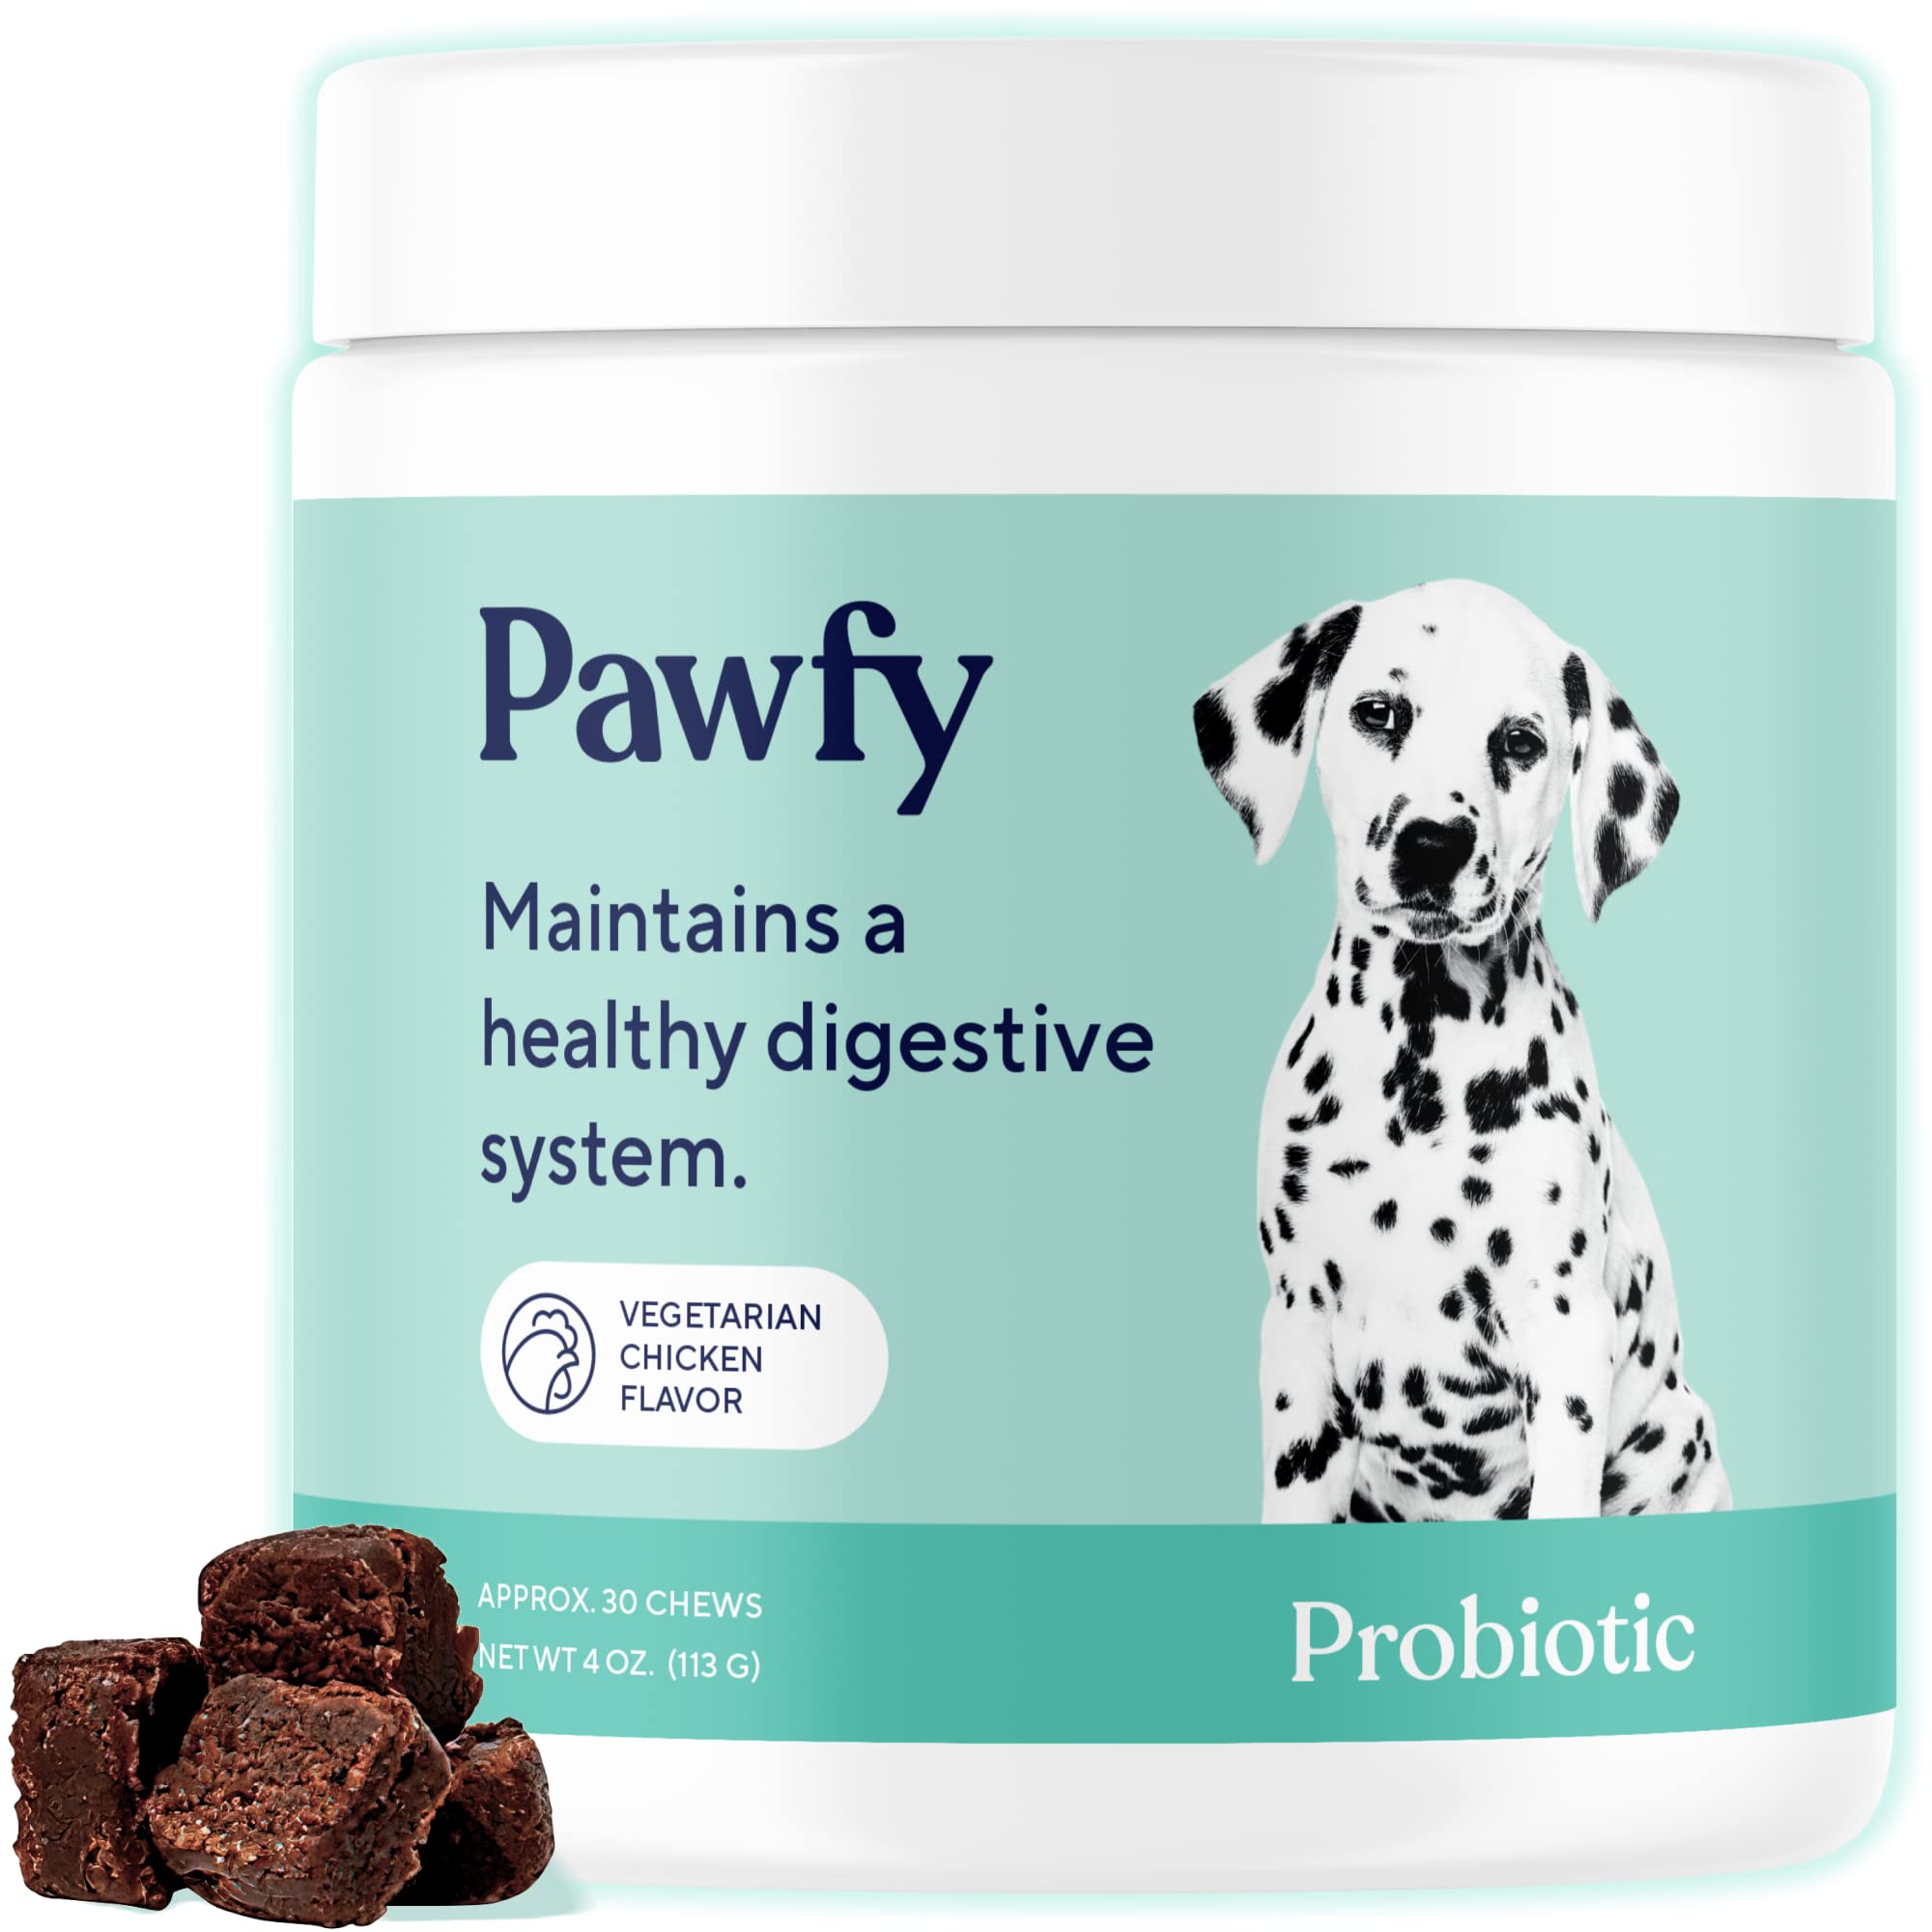 Pawfy Probiotic-1